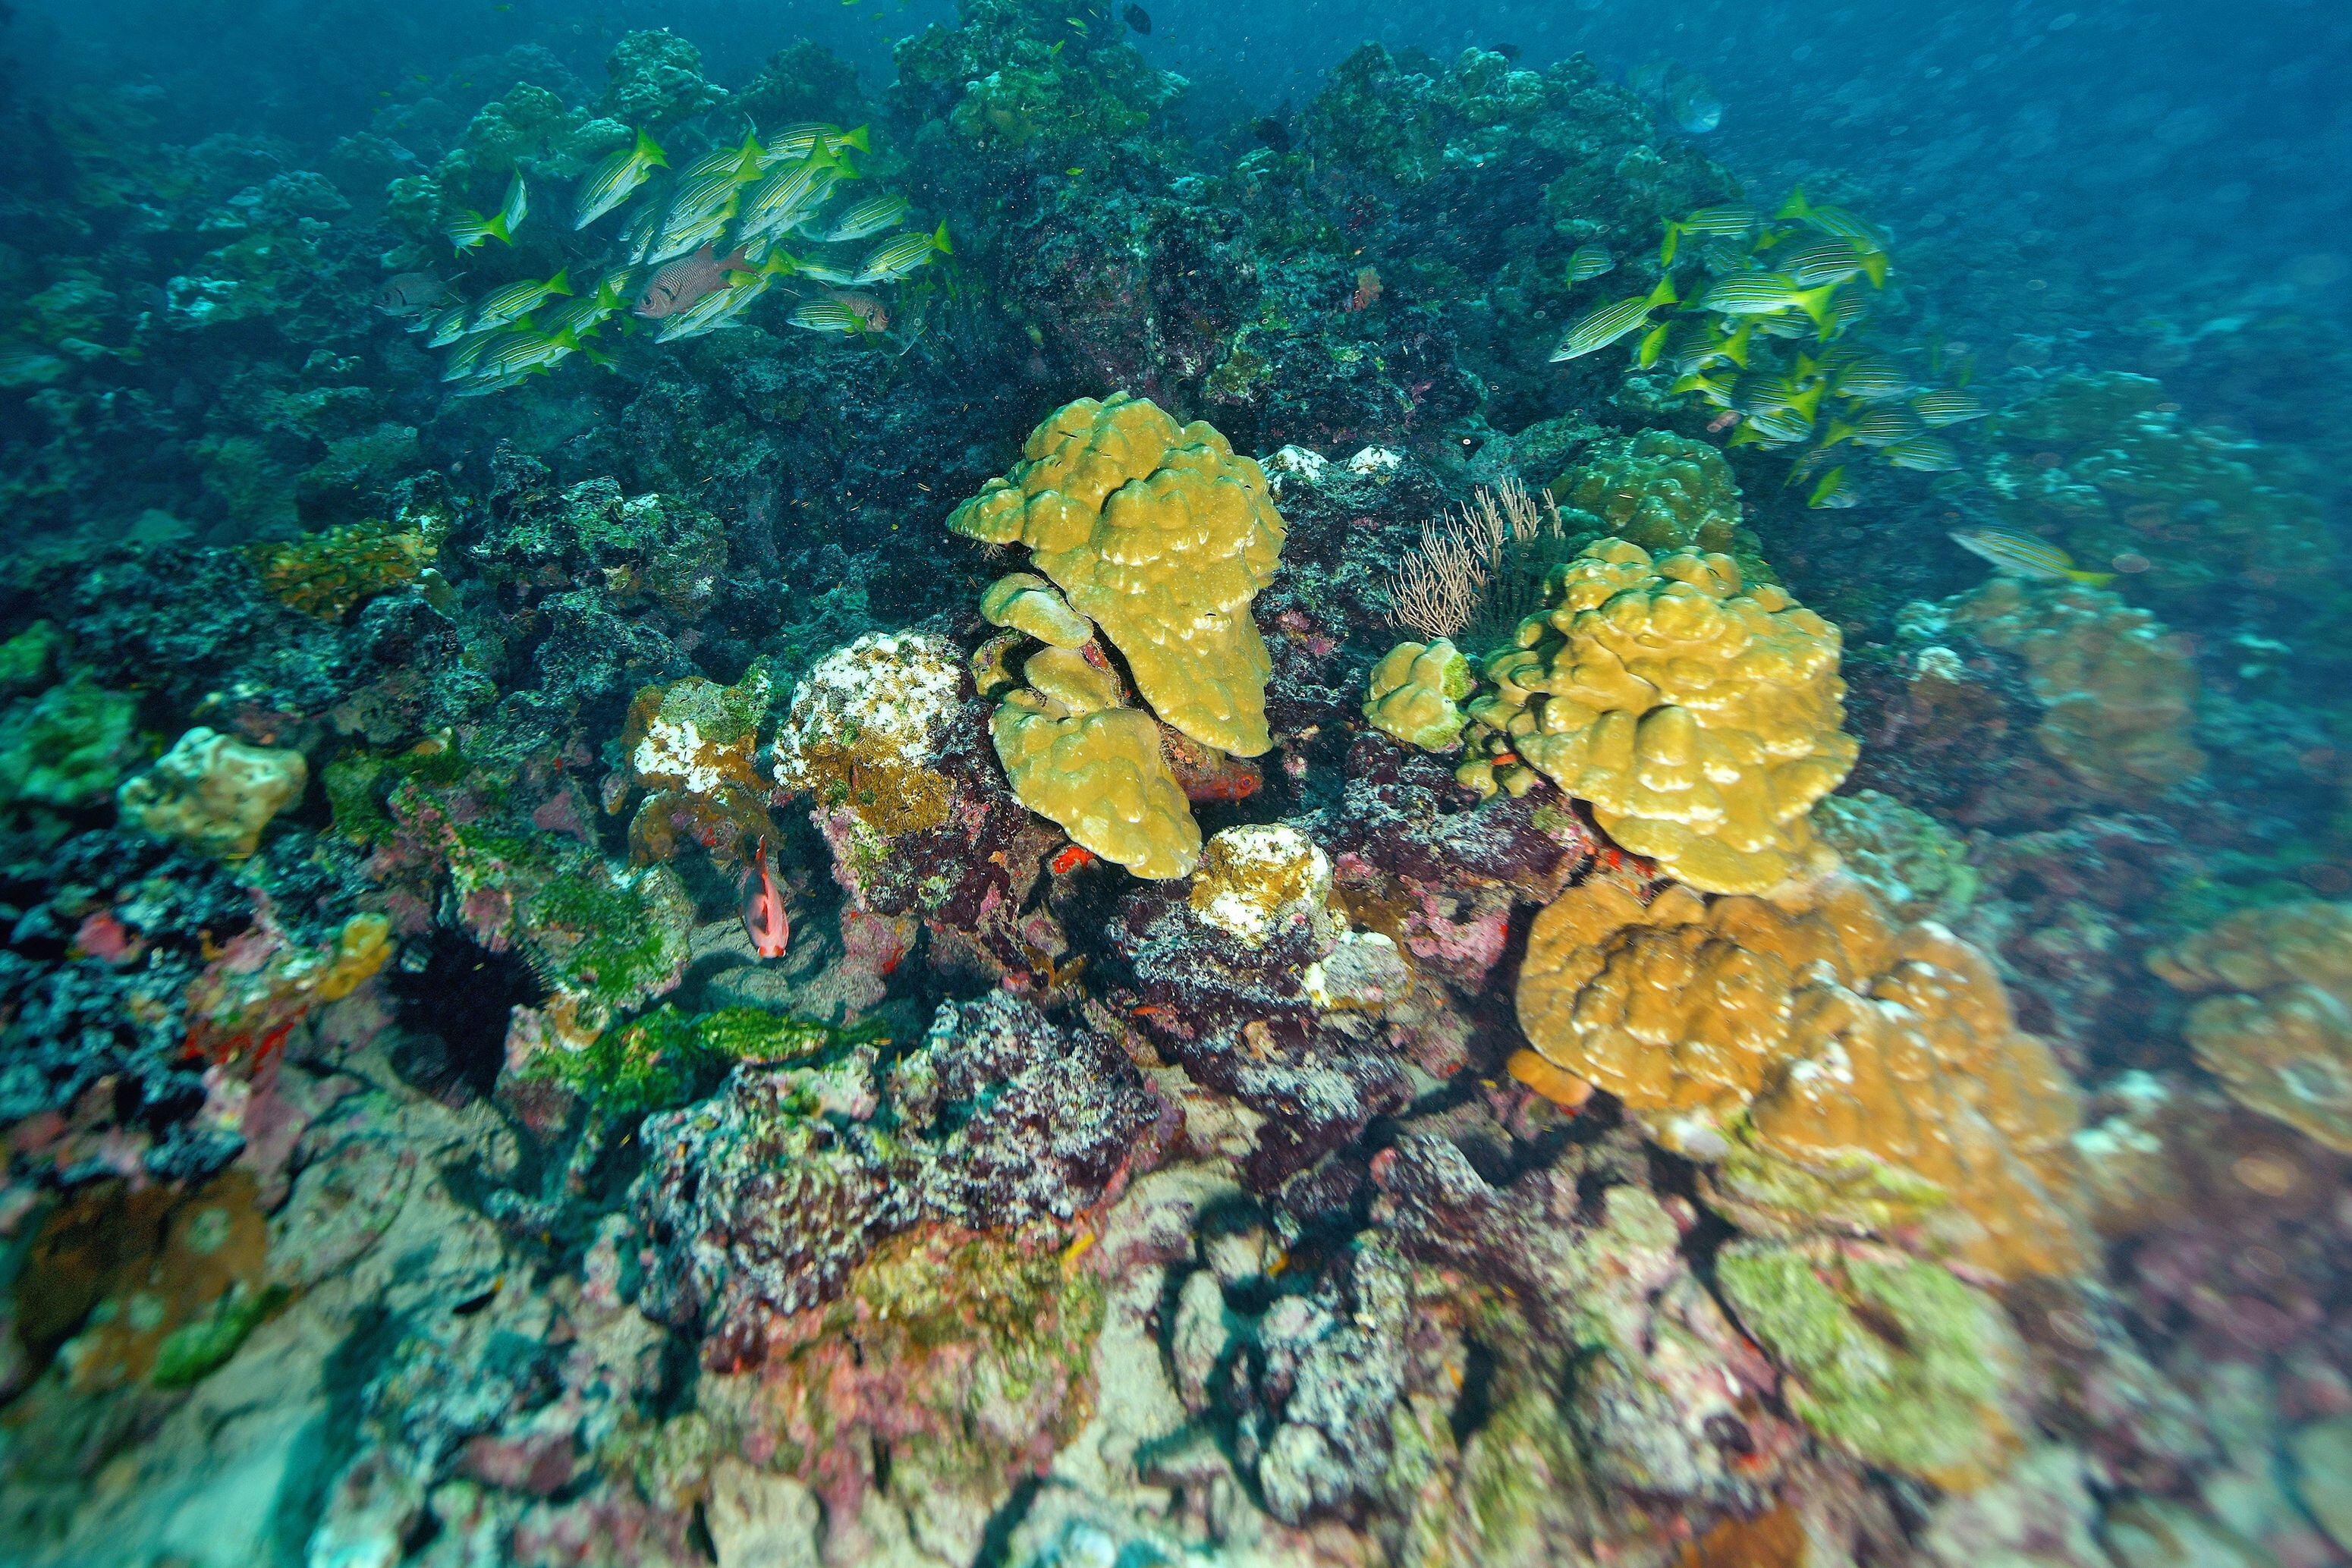 El color en el coral es señal de vida. Por eso, el coral blanco no es de recibo en términos ambientales, pues es señal de muerte para estas especies. Foto: John Durán